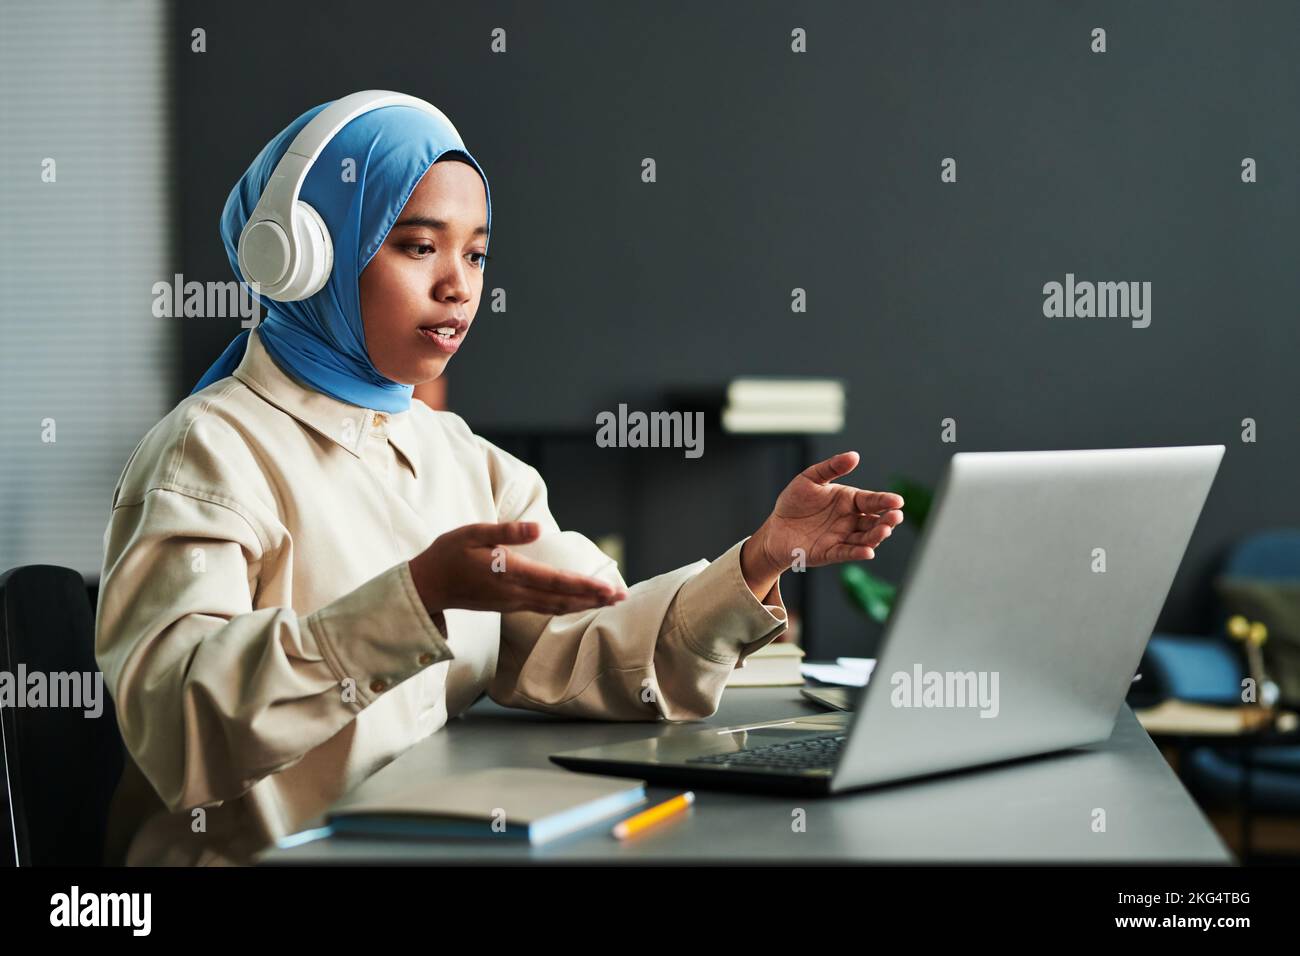 Junge selbstbewusste muslimische Frau in Kopfhörern über blauem Hijab, die während der Online-Kommunikation etwas erklärt Stockfoto